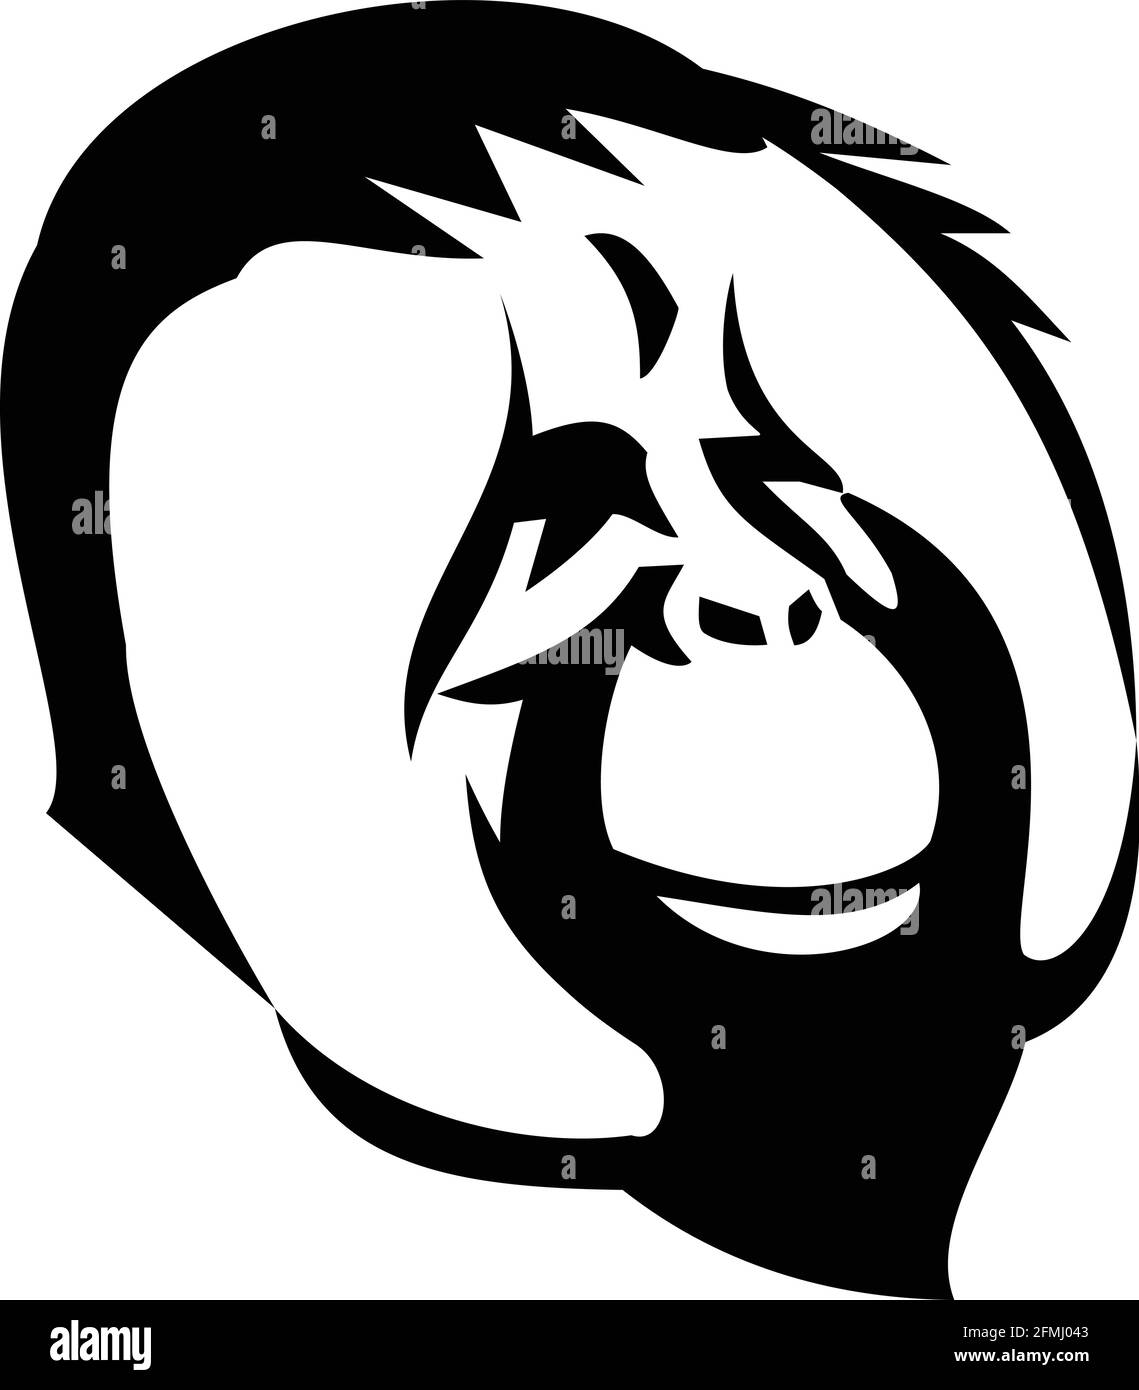 Maskottchen Illustration des Kopfes eines lächelnden erwachsenen männlichen Orang-Utan, großer Affe aus den Regenwäldern Indonesiens und Malaysias mit markanten Wangenpolster oder Stock Vektor